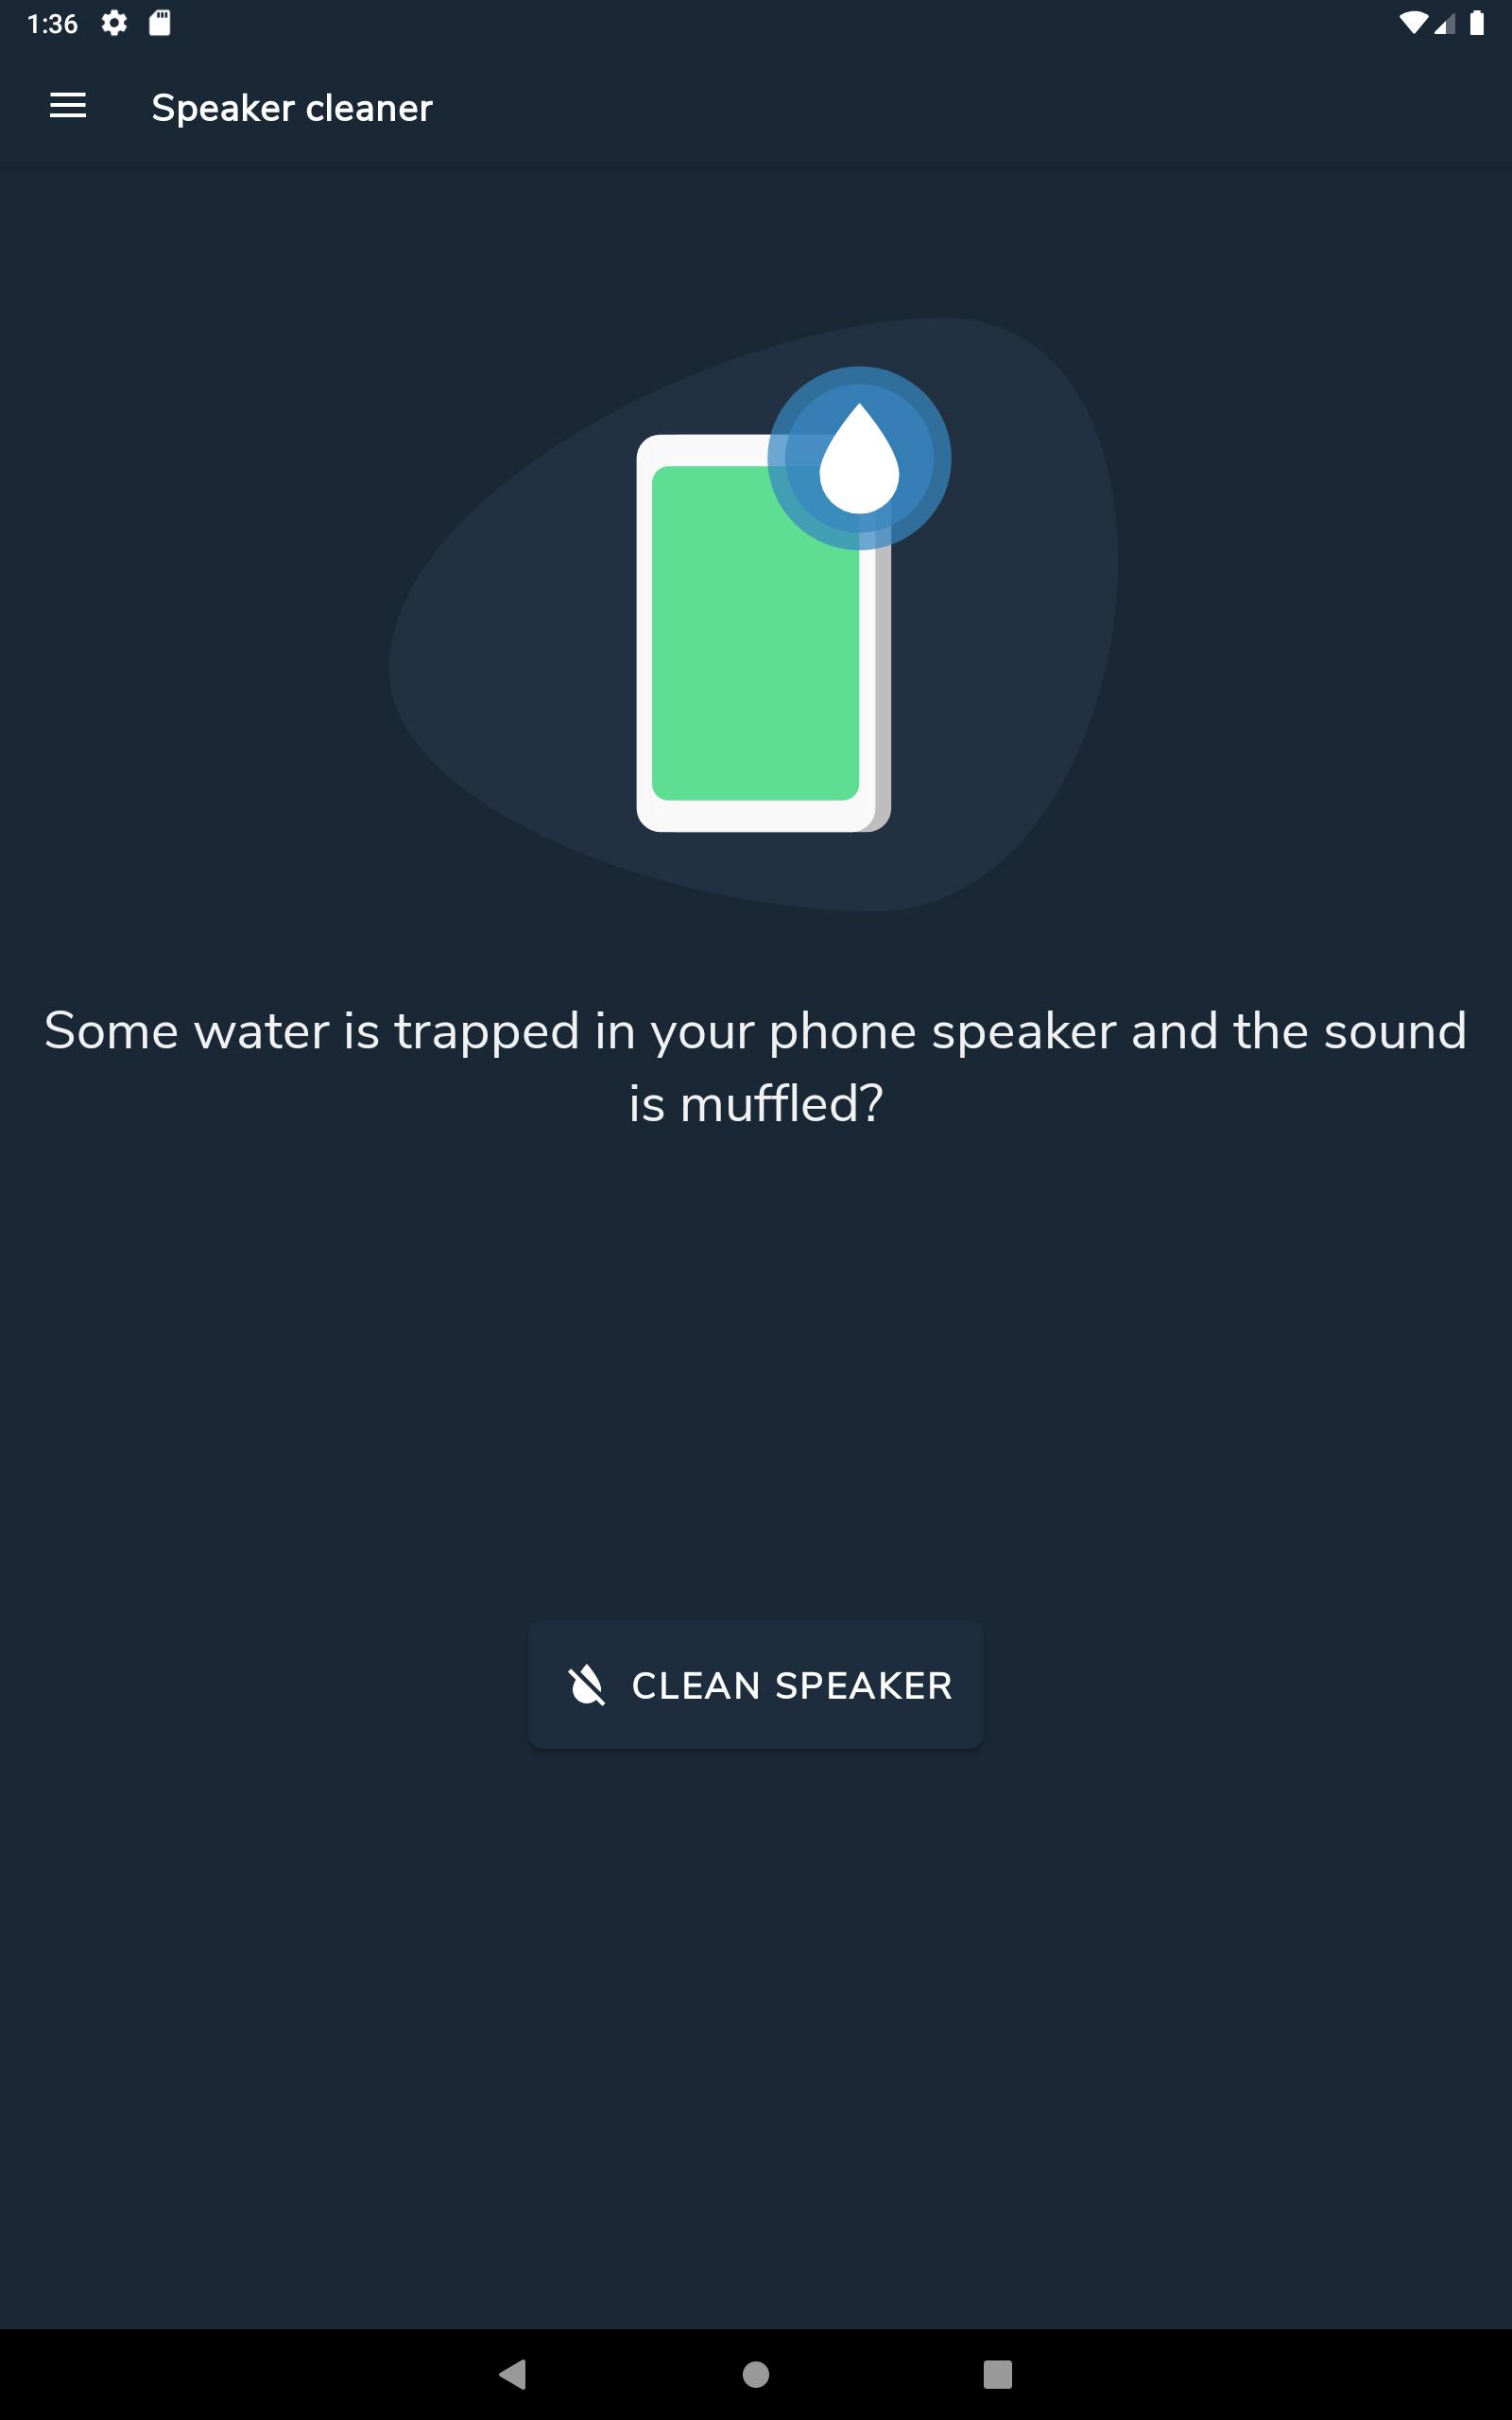 Удаление воды из телефона. Звук для выведения воды из динамика телефона. Звук для удаления воды. Убрать воду из динамика андроид. Вывод воды из динамика телефона.